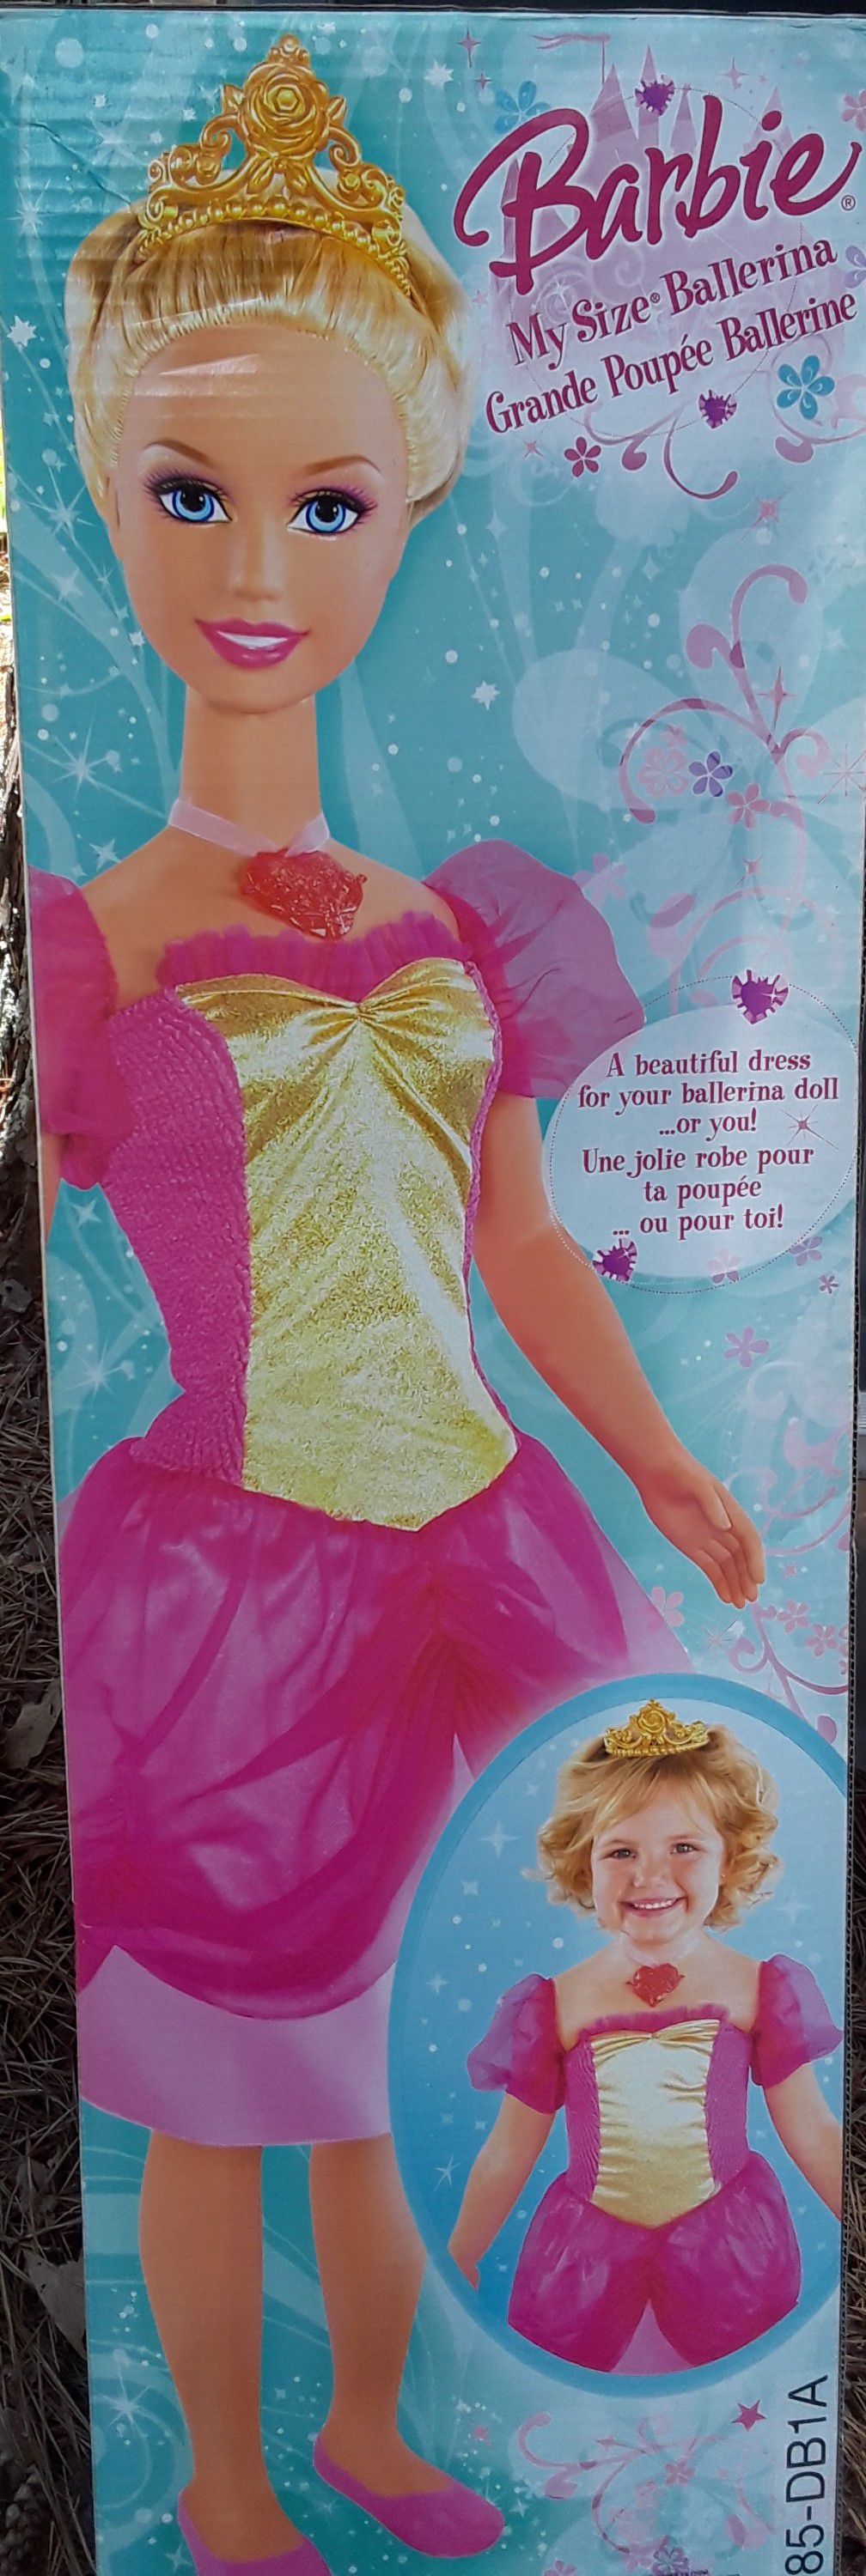 Barbie, My size: Princess